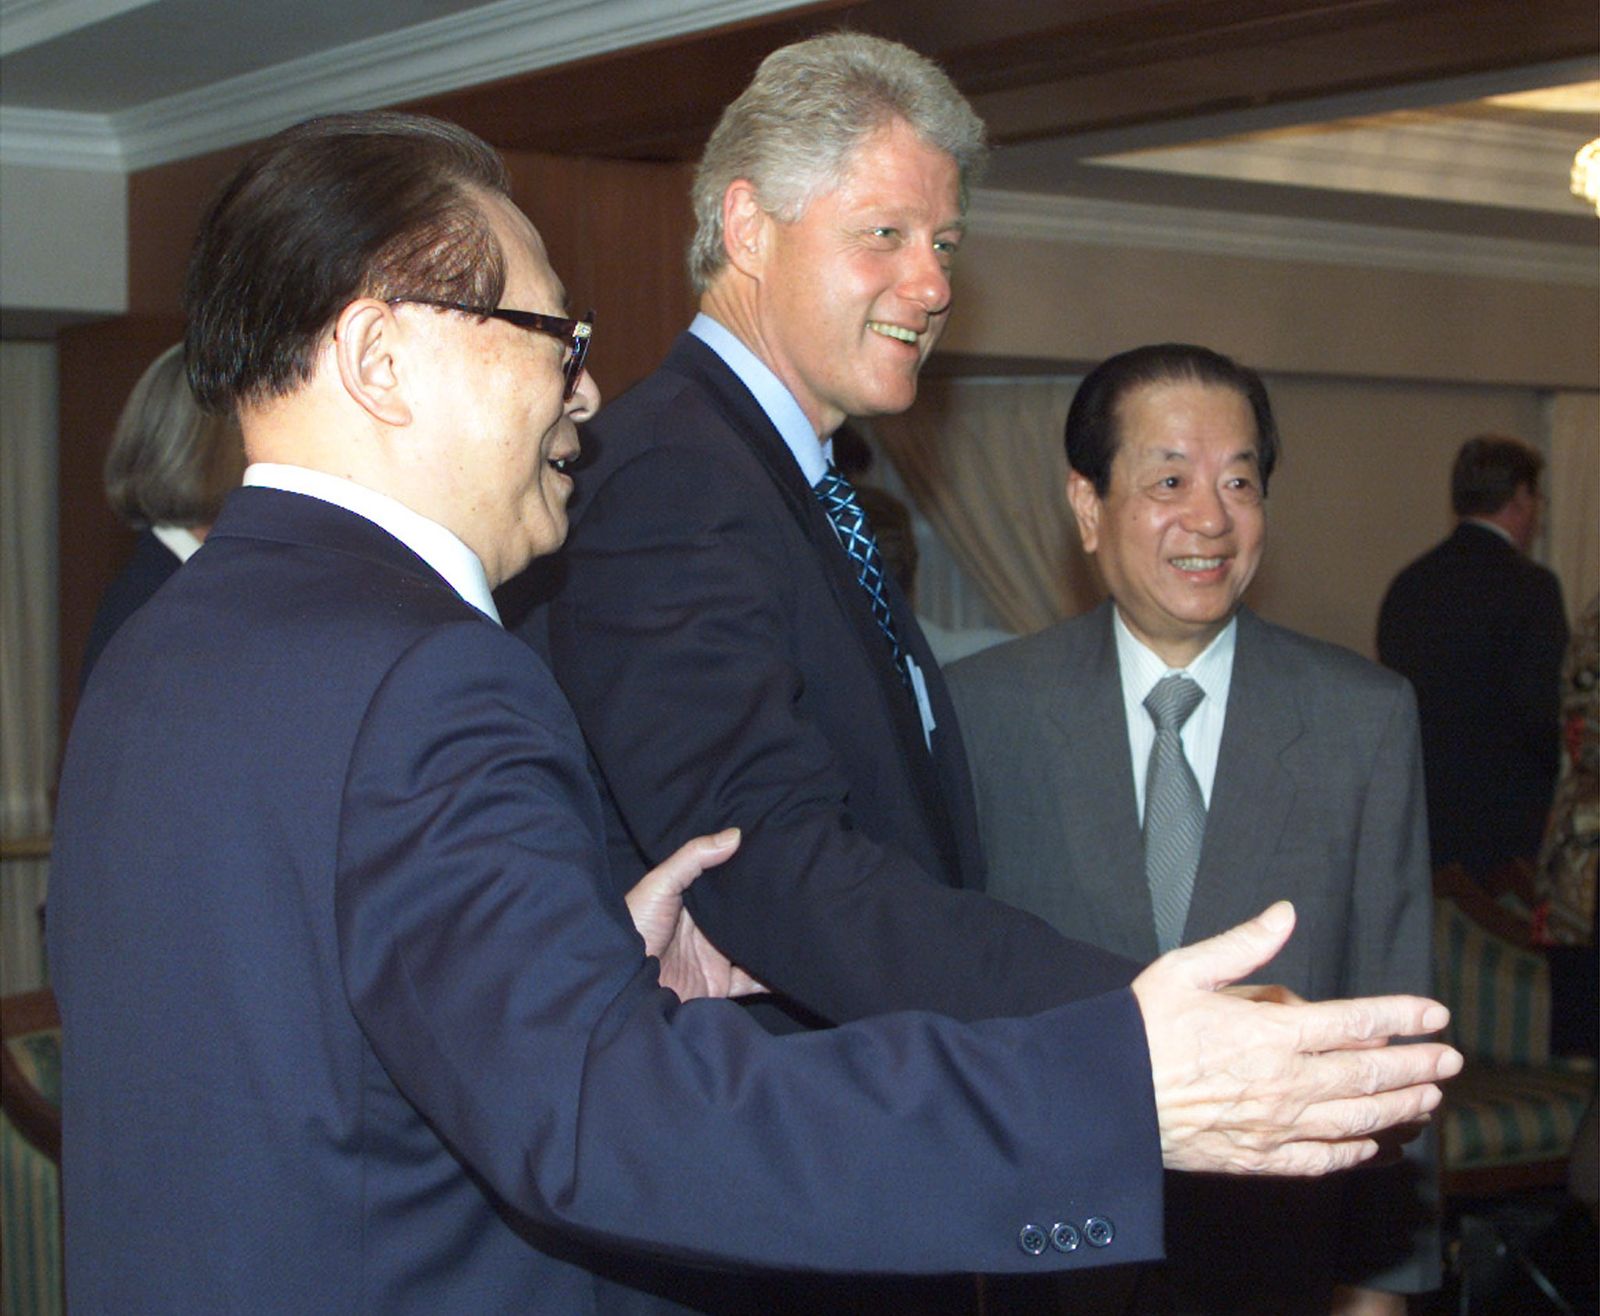  الرئيس الصيني آنذاك جيانغ زيمين (يسار) إلى جانب نظيره الأميركي بيل كلينتون خلال قمة بشأن تحرير الاقتصاد الصيني في بندر سري بكاوان، عاصمة بروناي - 16 نوفمبر 2000 - REUTERS